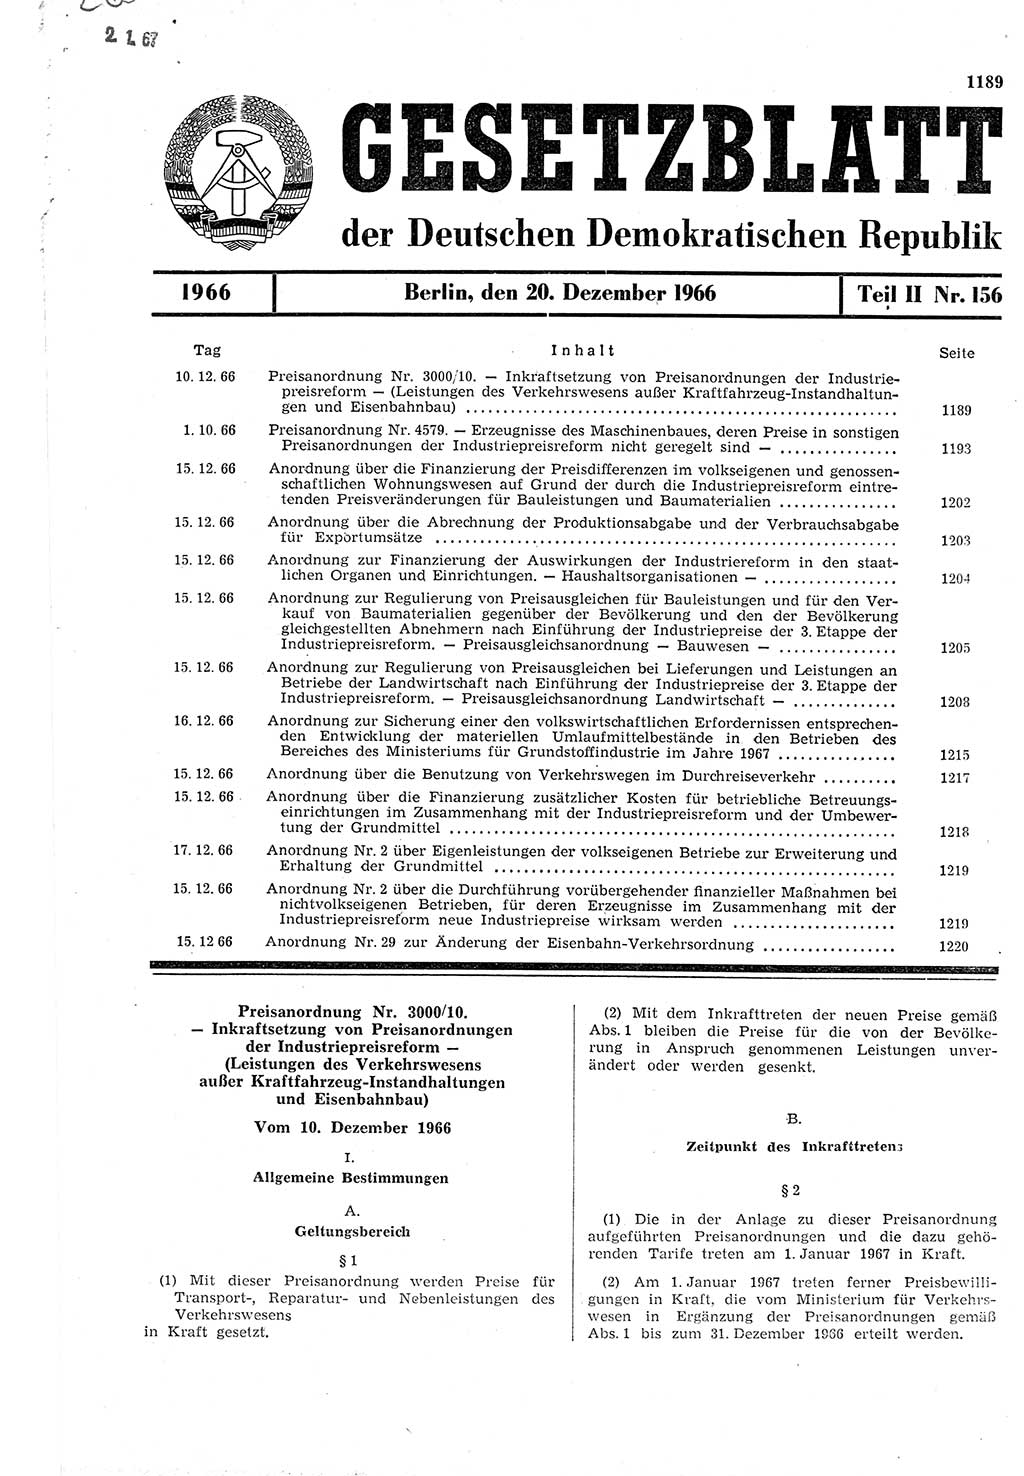 Gesetzblatt (GBl.) der Deutschen Demokratischen Republik (DDR) Teil ⅠⅠ 1966, Seite 1189 (GBl. DDR ⅠⅠ 1966, S. 1189)